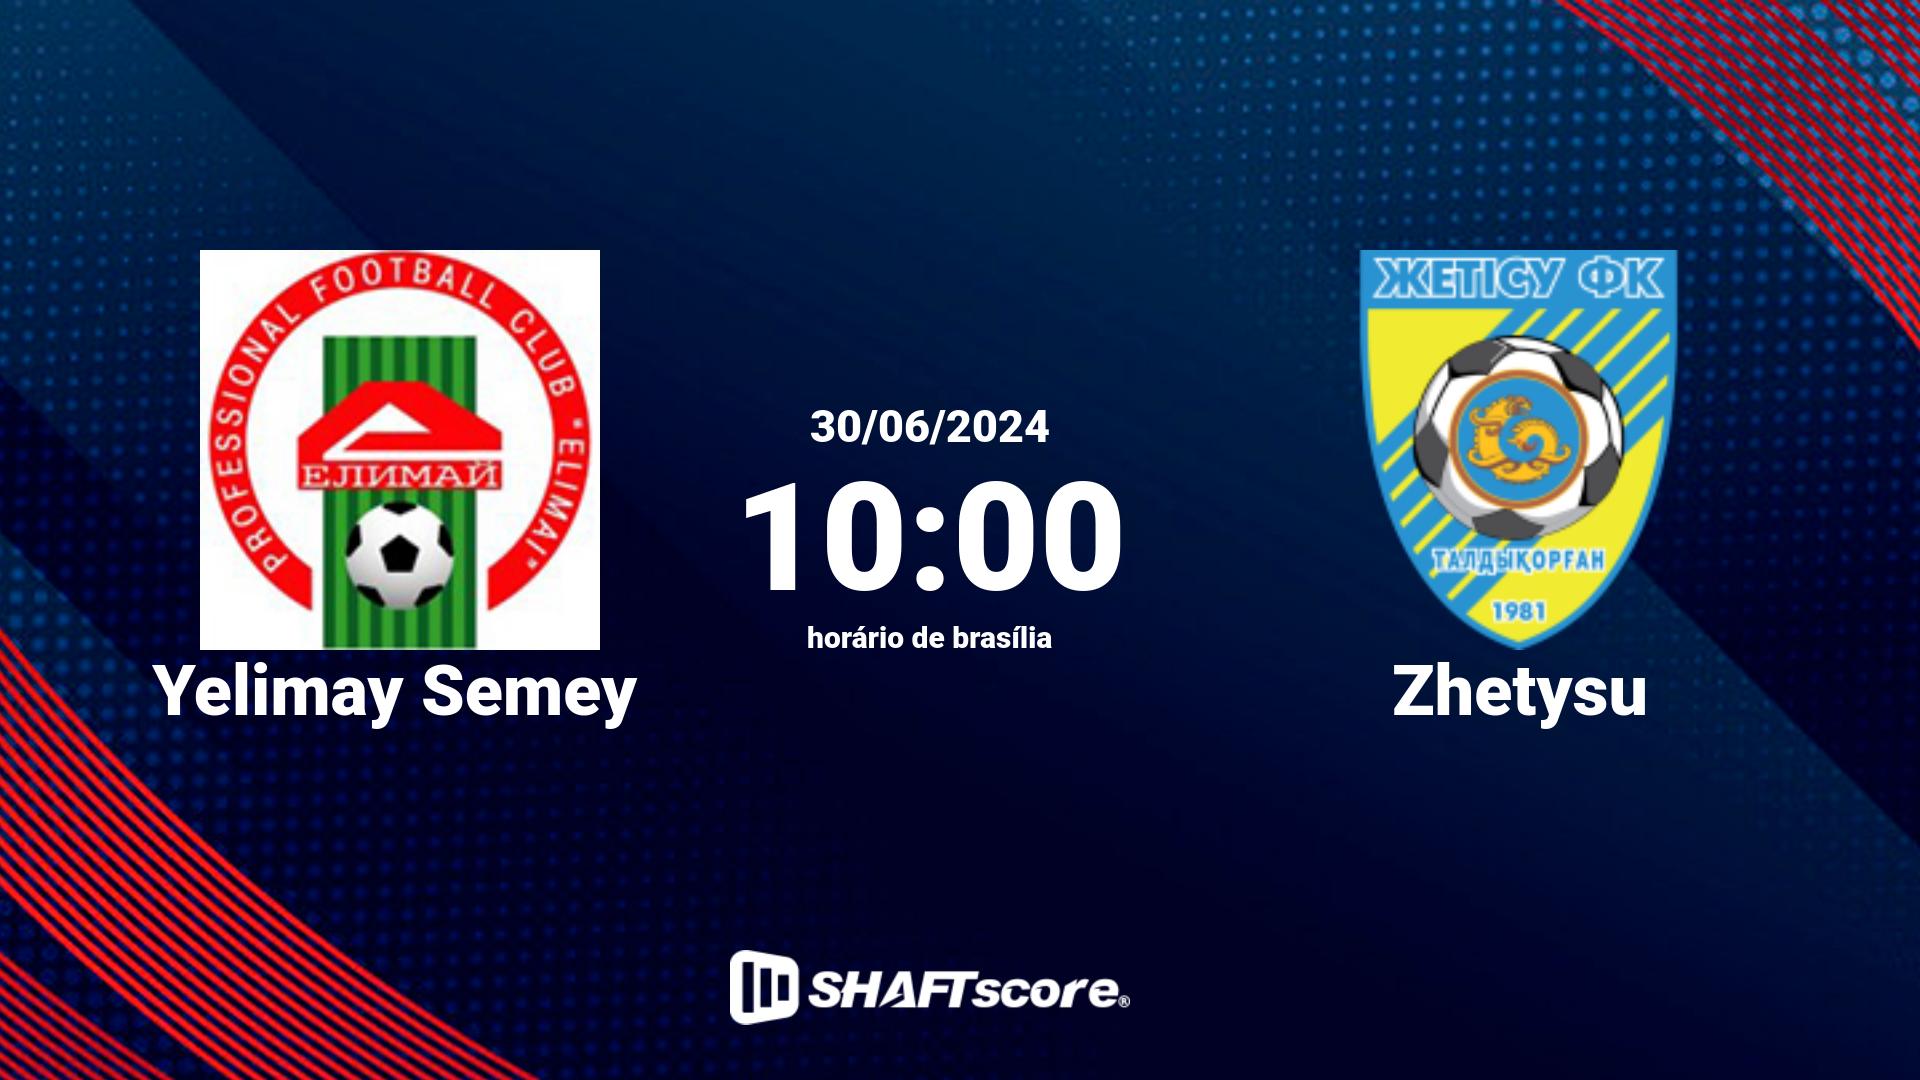 Estatísticas do jogo Yelimay Semey vs Zhetysu 30.06 10:00